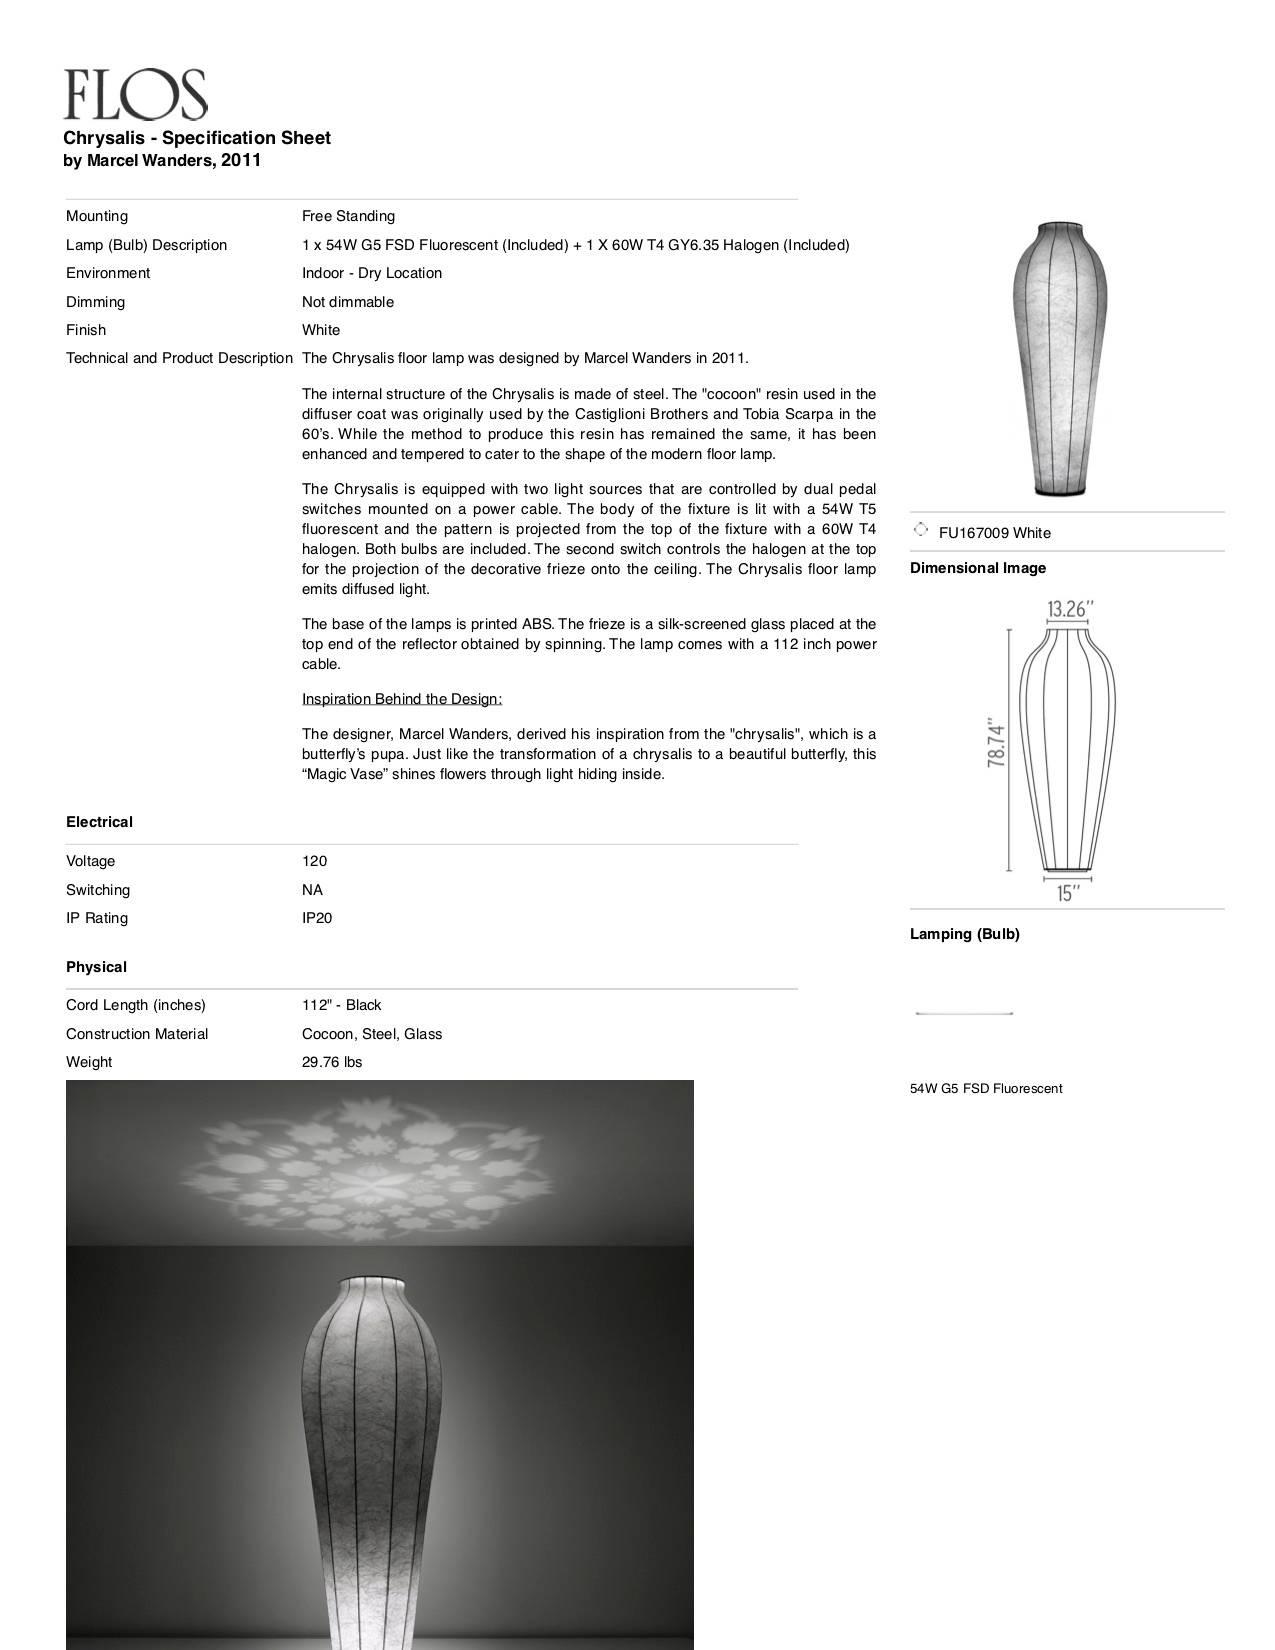 Contemporary Flos Chrysalis Floor Lamp by Marcel Wanders, 1stdibs New York